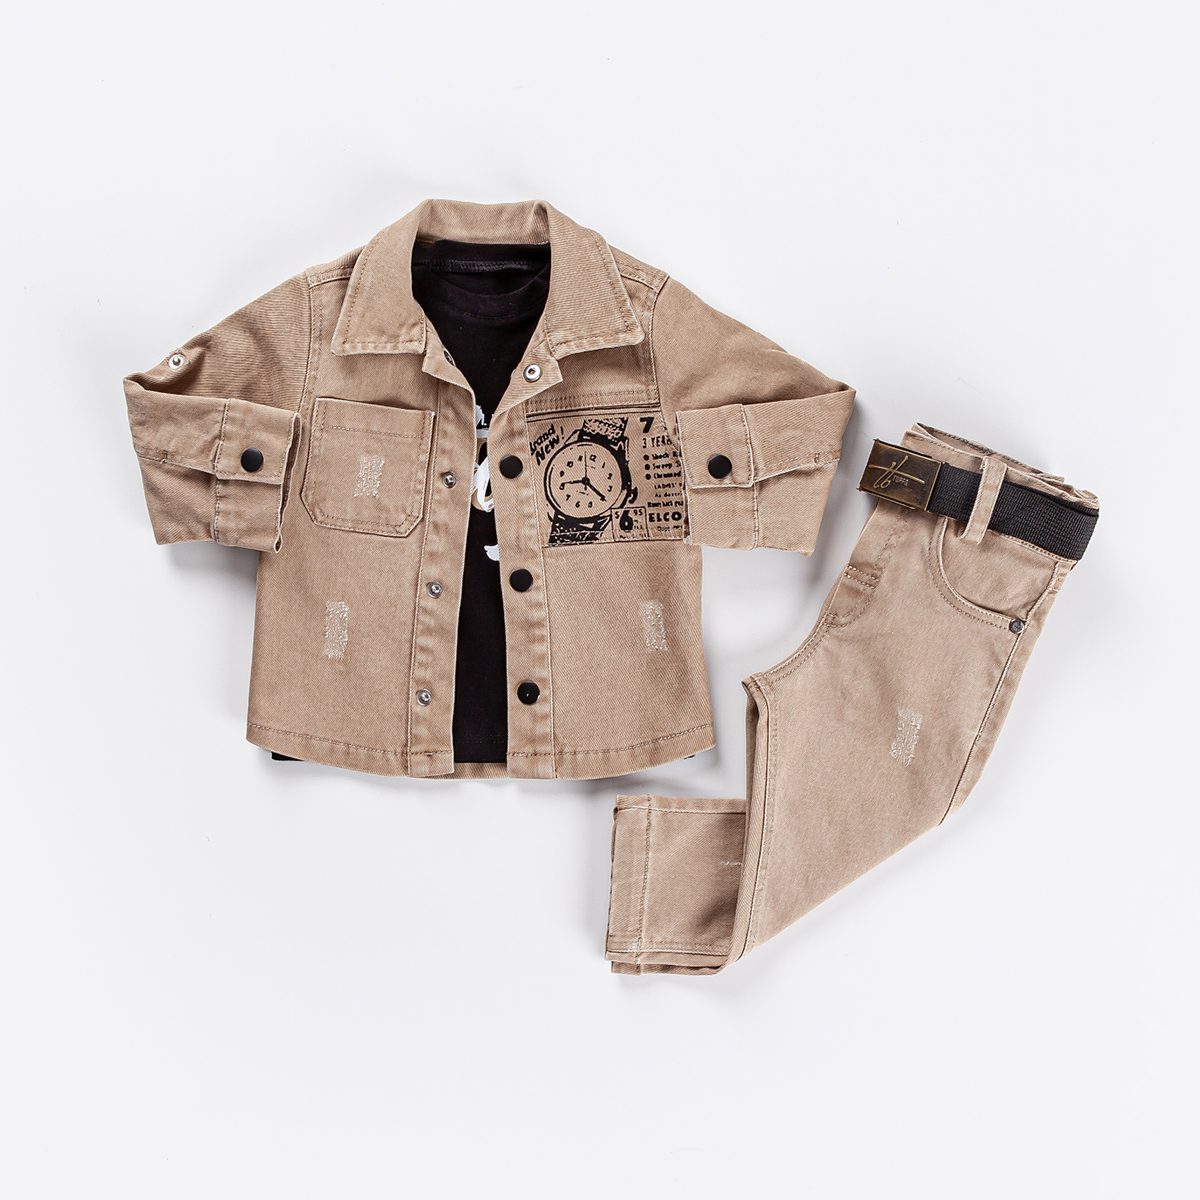 Boy 3 Pieces Sulfur Suit Set (Shirt + T-Shirt + Jean) / 9-12M |12-18M | 18-24M - Kids Fashion Turkey